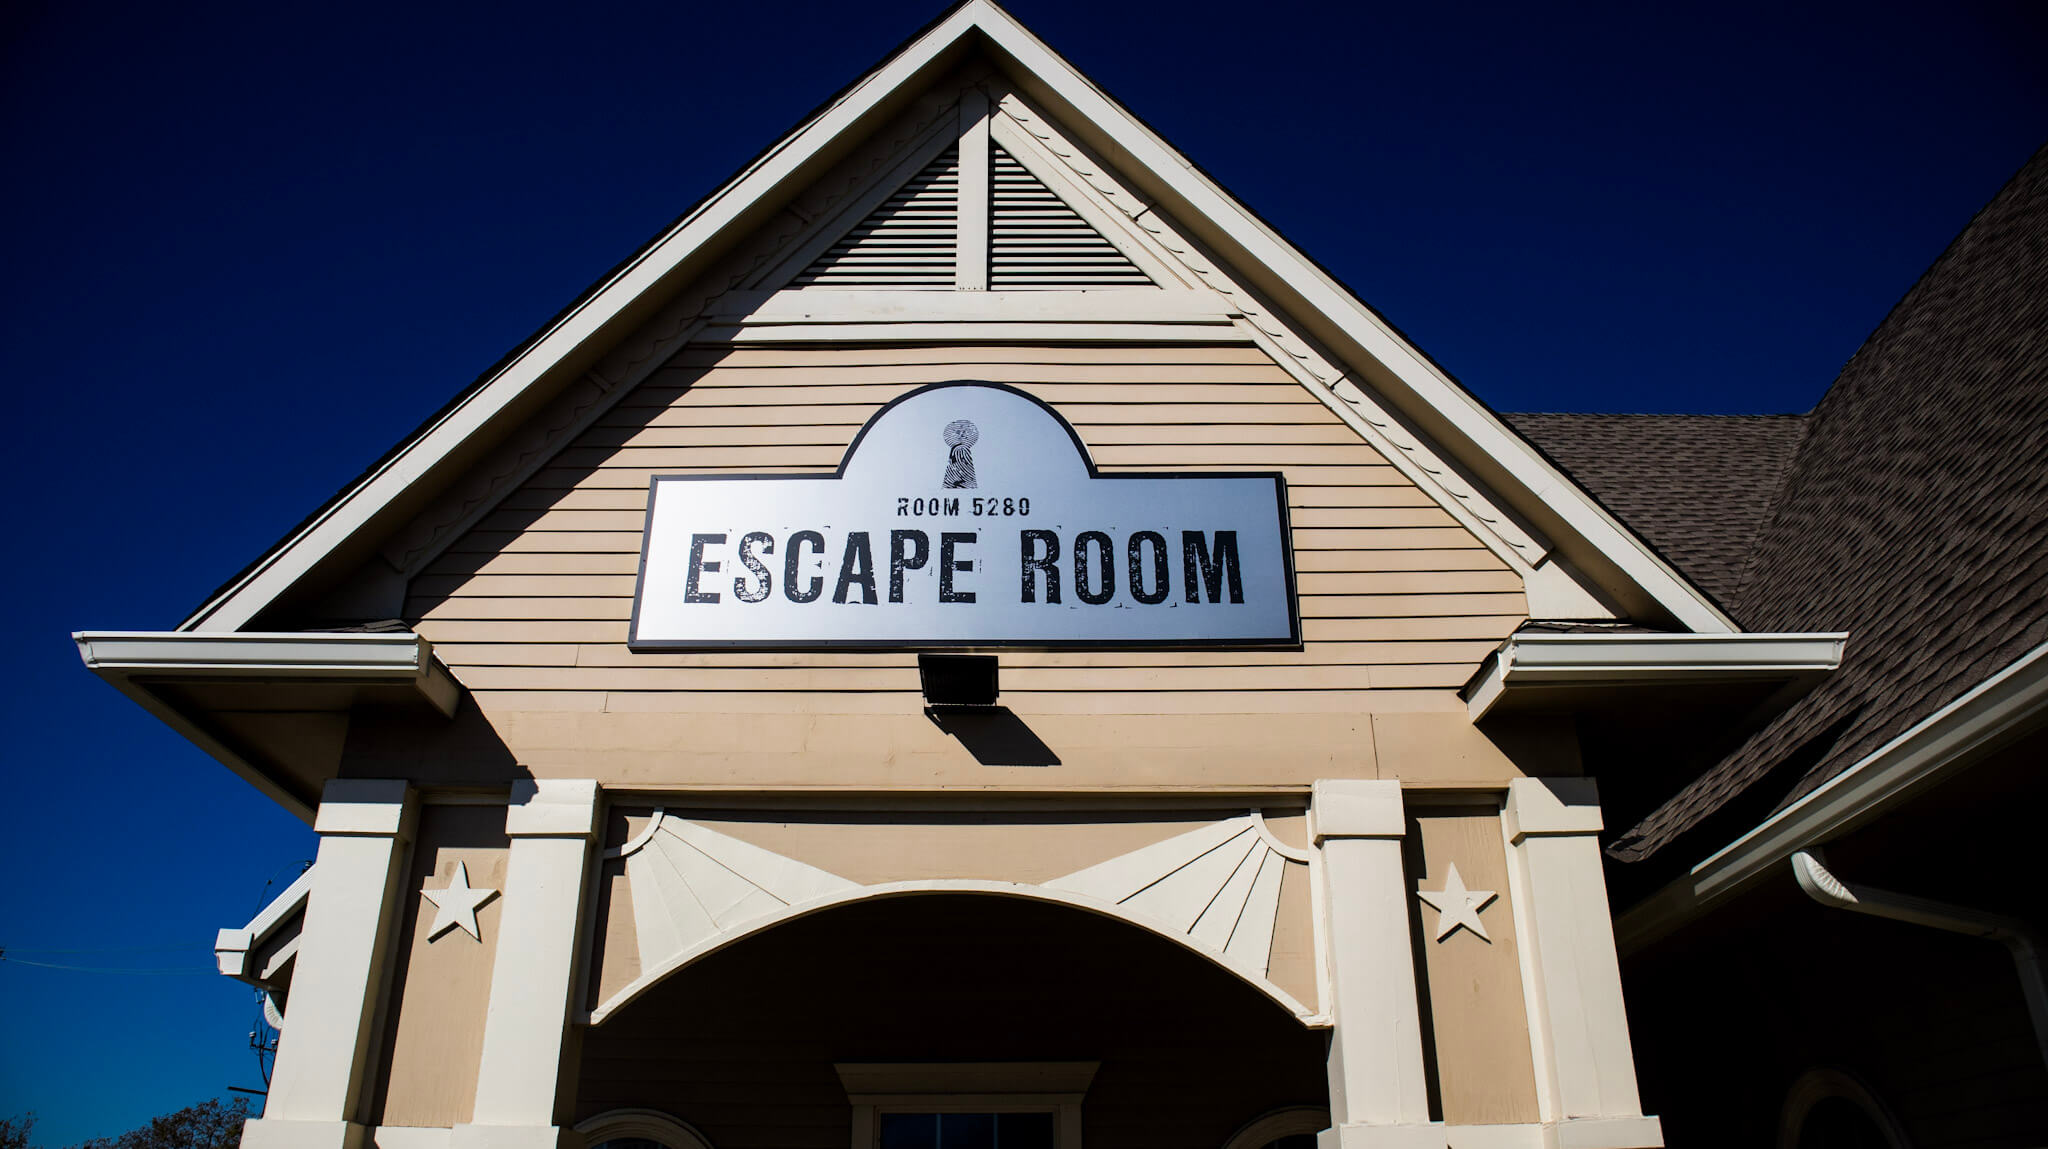 Escape Room 5280